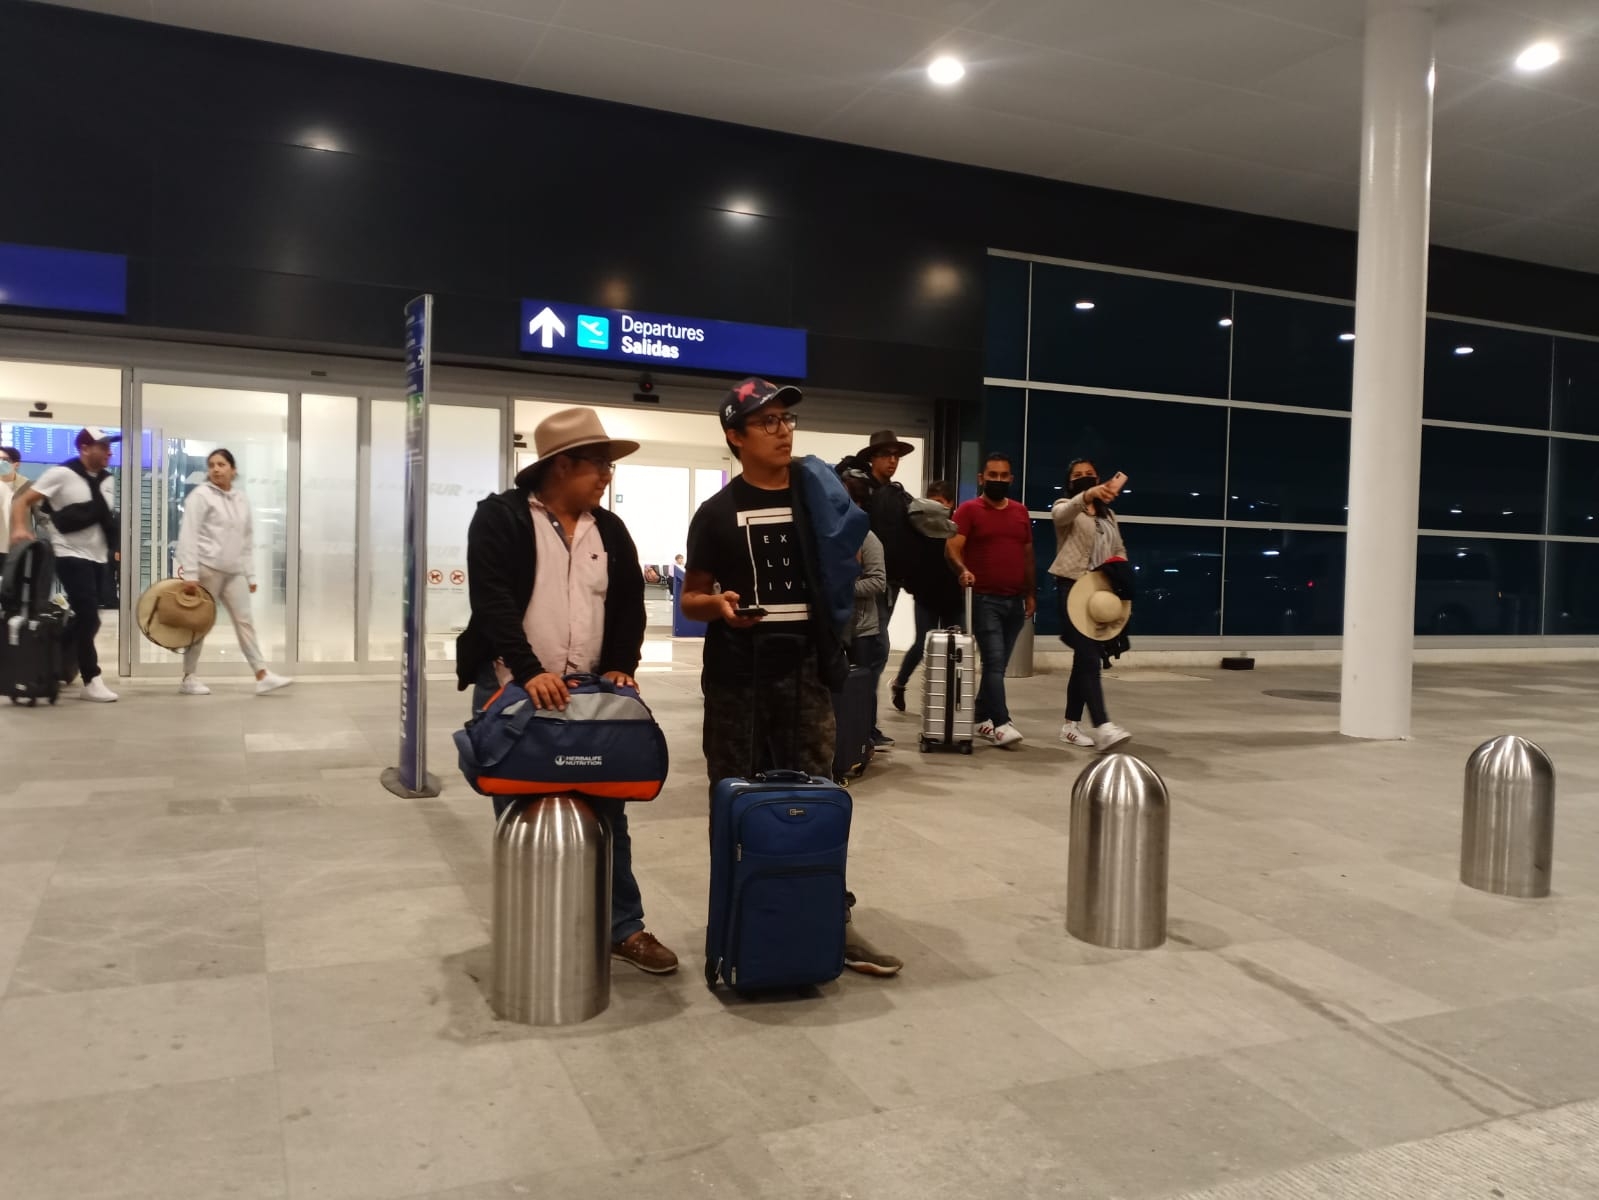 Se desconoce la razón sobre la cancelación de vuelos en el aeropuerto de Mérida